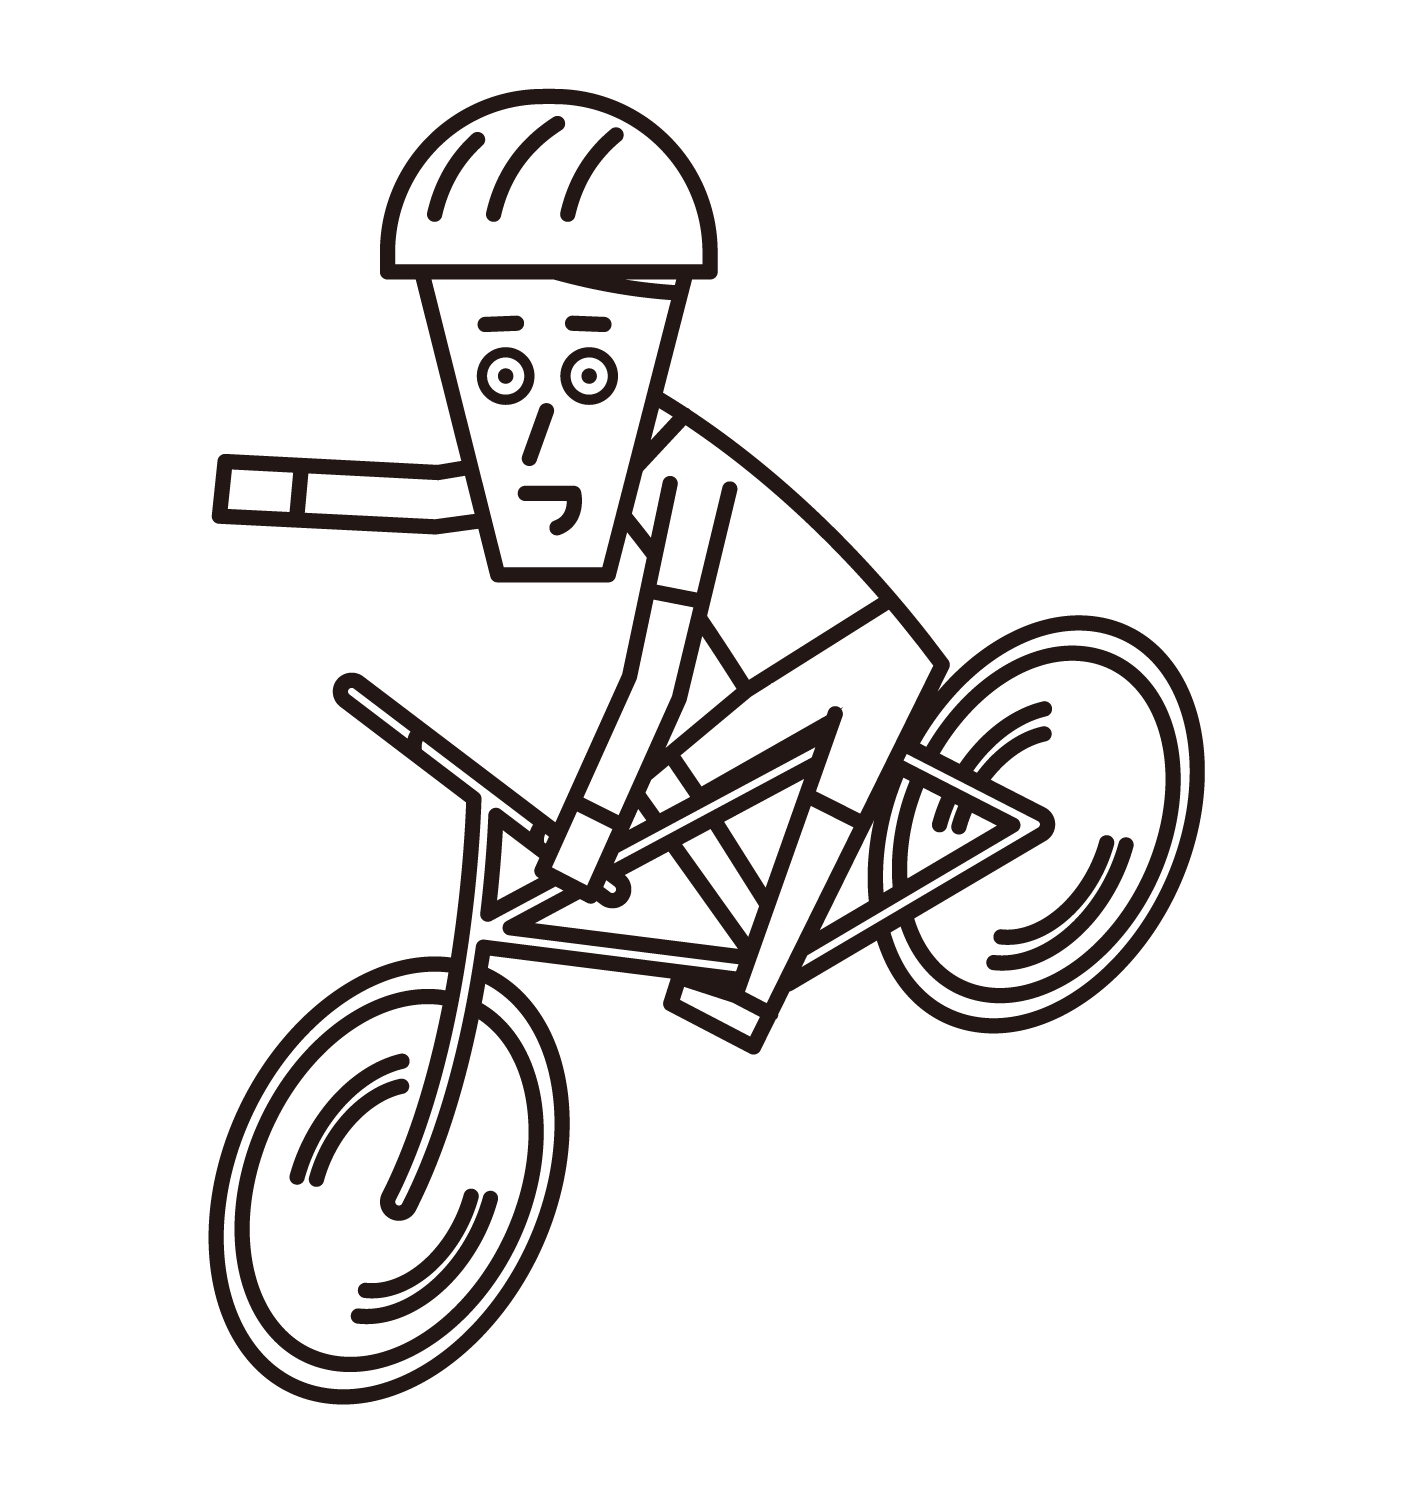 핸드 시그널(손 표지판)이 있는 자전거 타기(남성)의 일러스트